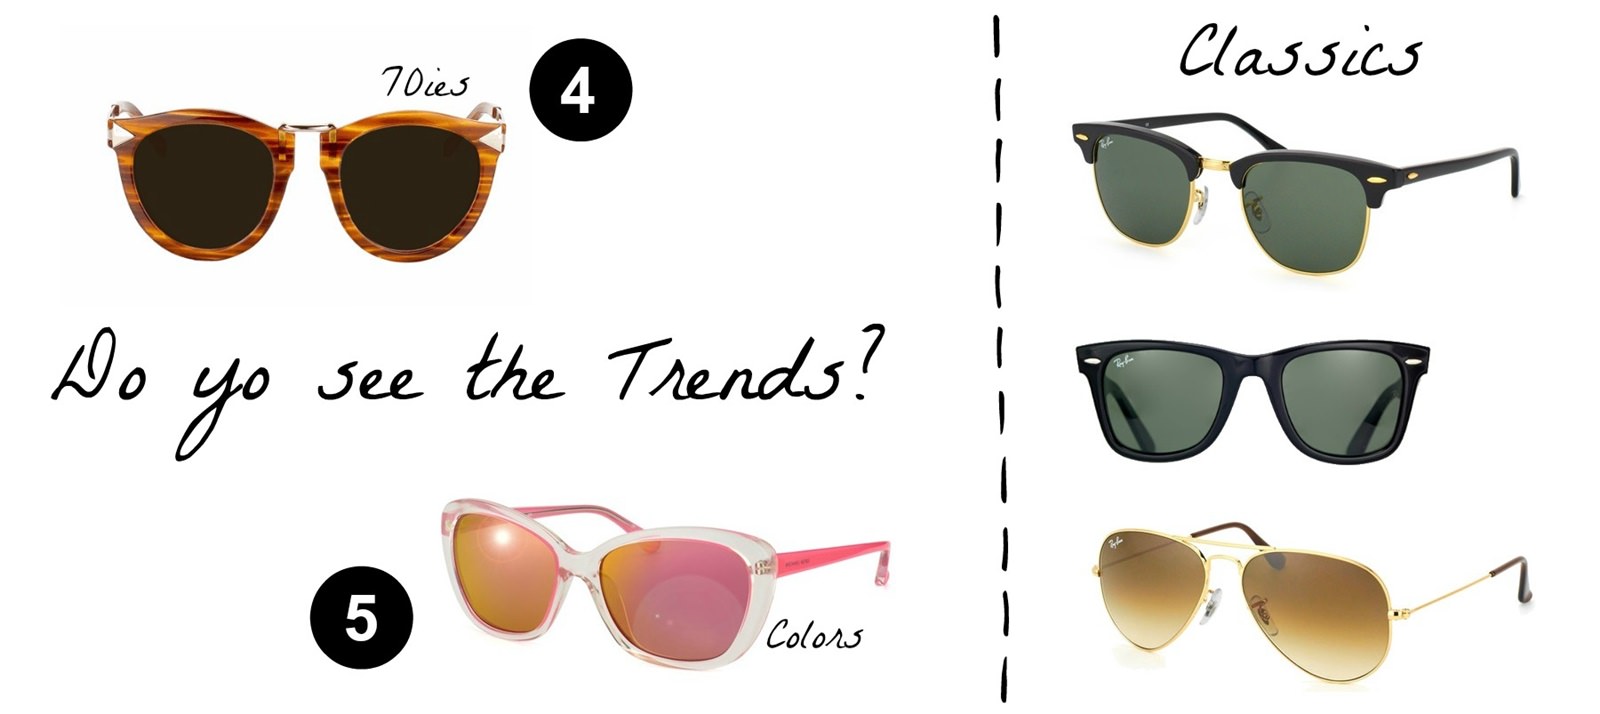 Des Belles Choses Top 5 - Sunglasses Trends 2015 2